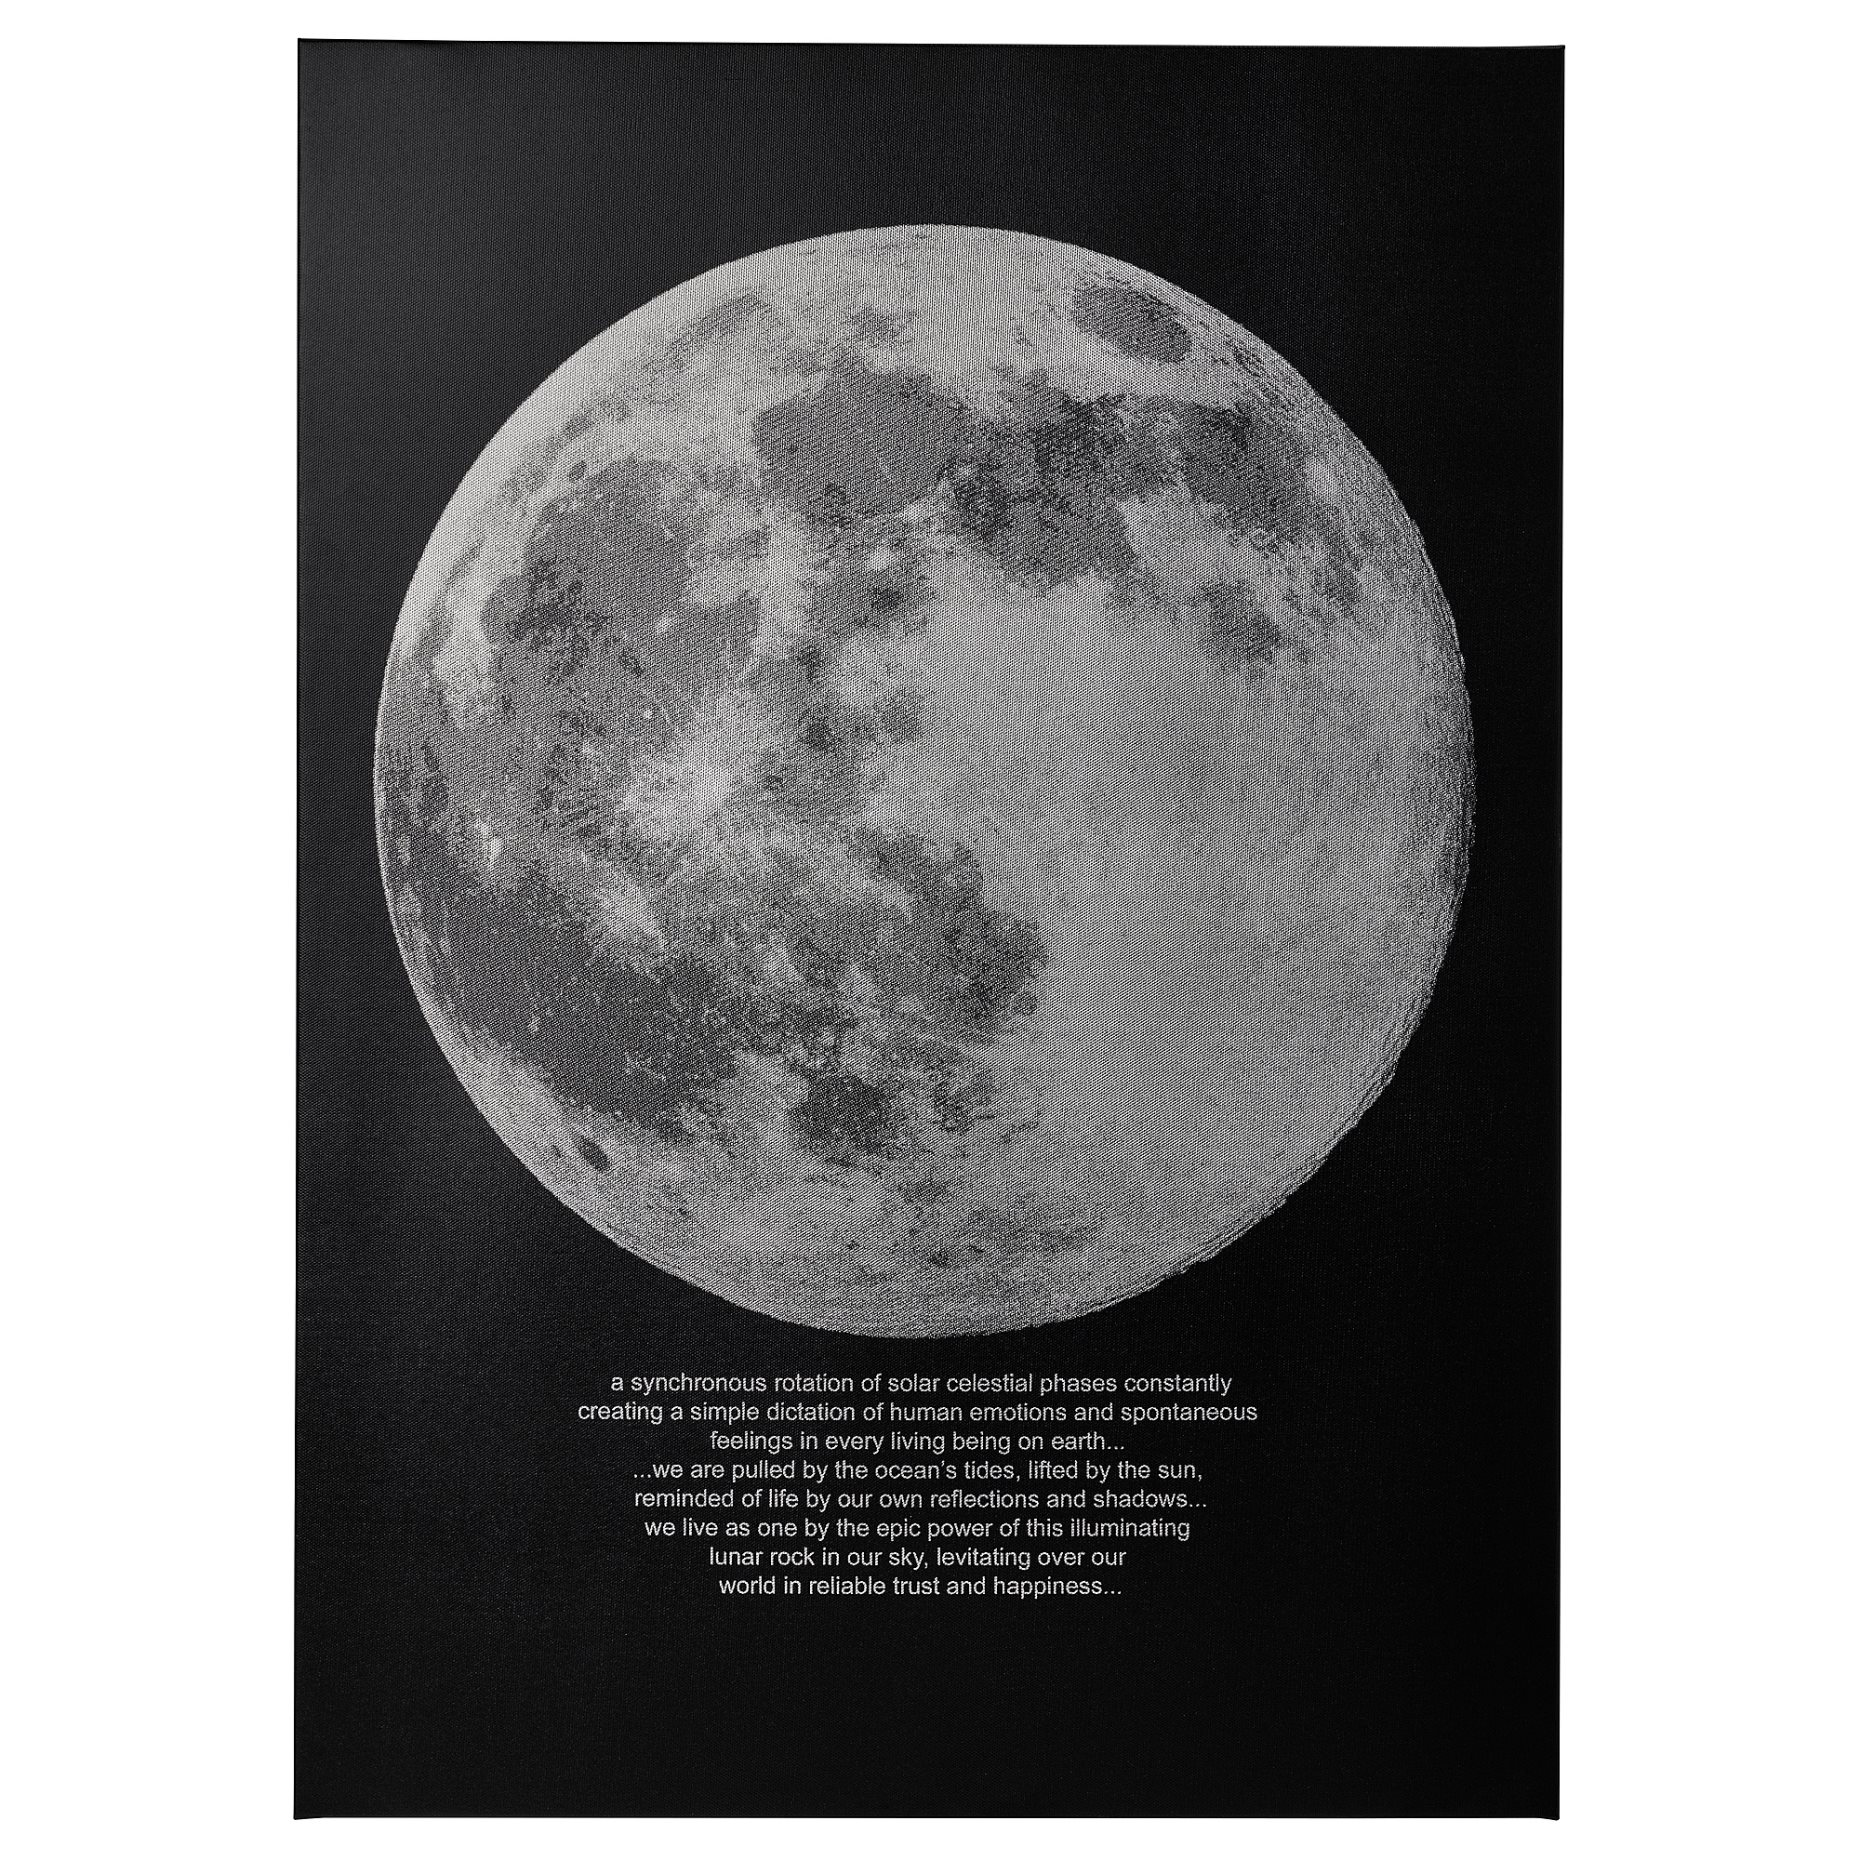 PJÄTTERYD, picture/moonlight, 50x70 cm, 505.545.02